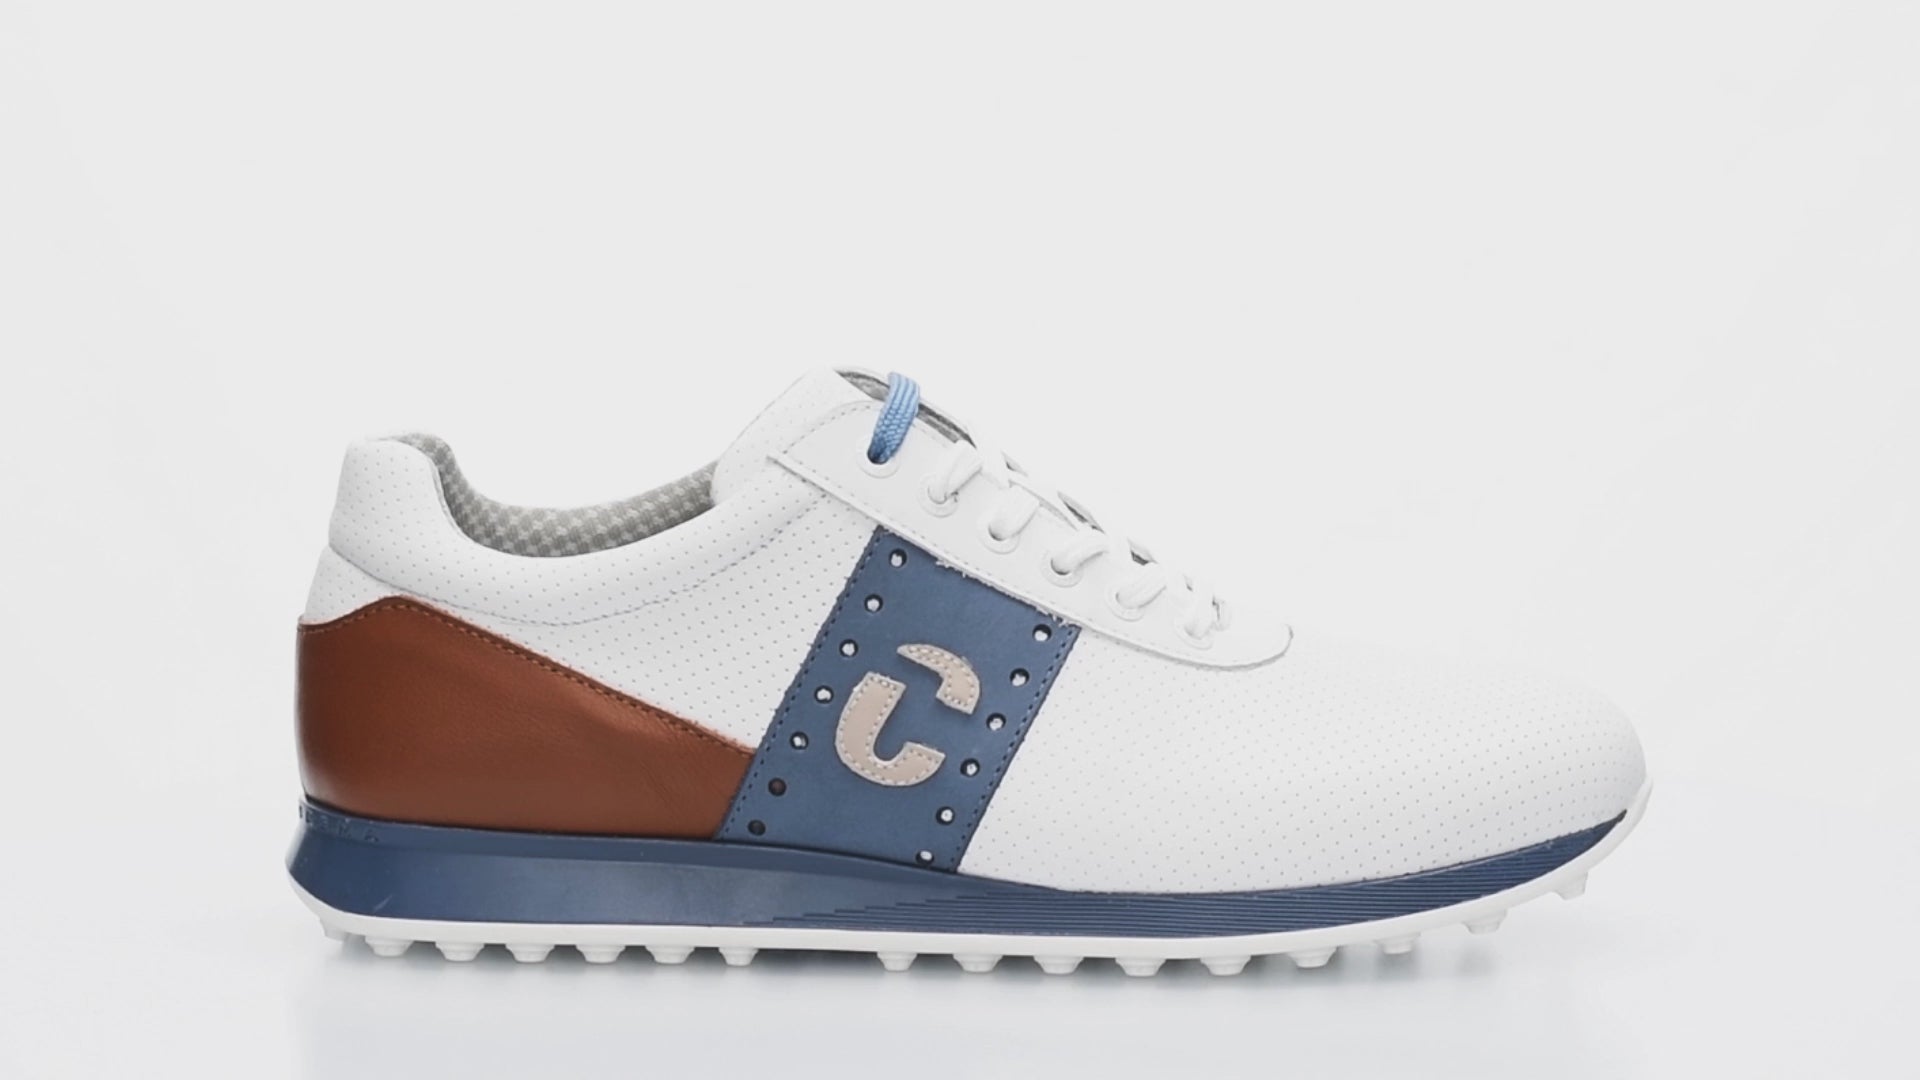 Men's Belair White / Cognac / Blue Golf Shoe